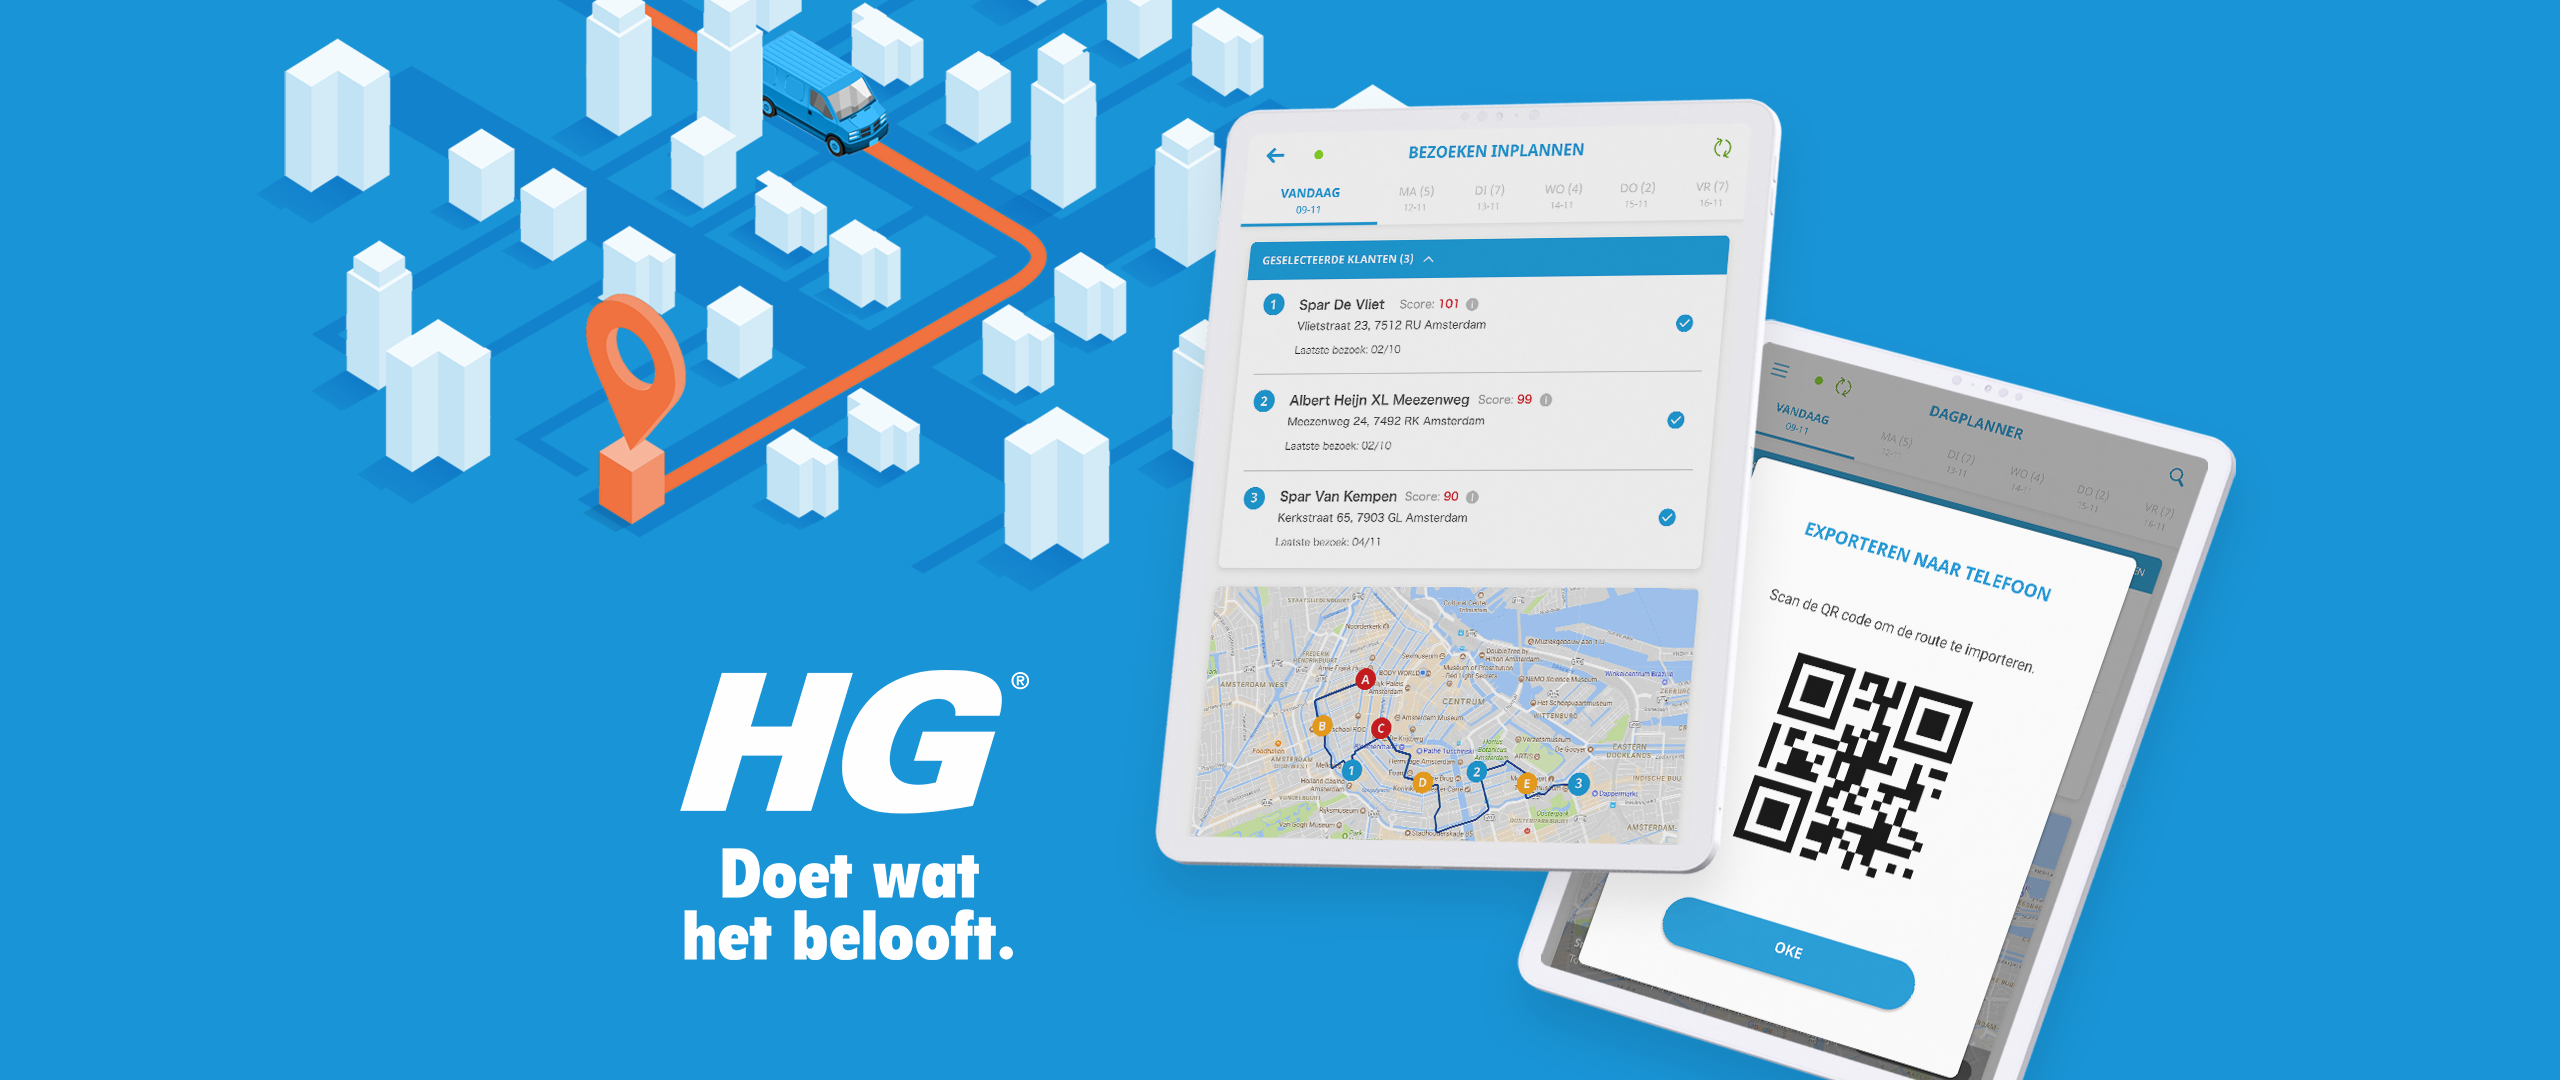 HG Sales app III: boosting efficiency of HG sales